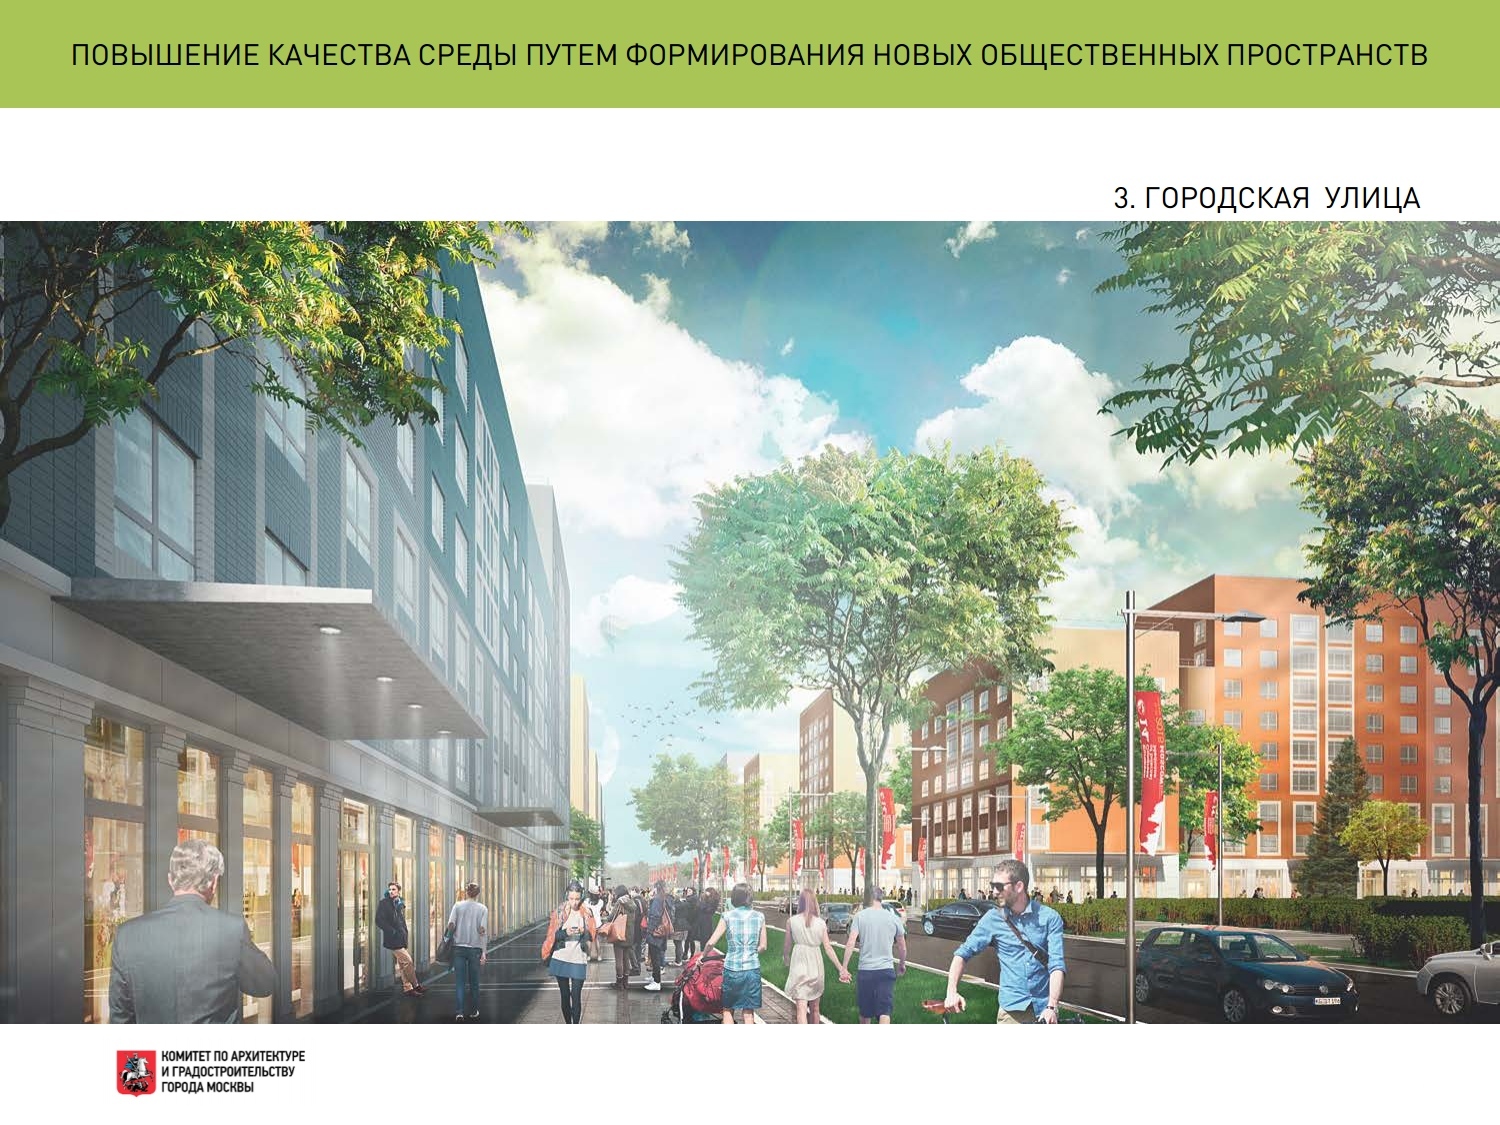 Архитектурно-градостроительный конкурс на экспериментальные площадки реновации жилищного фонда в Москве